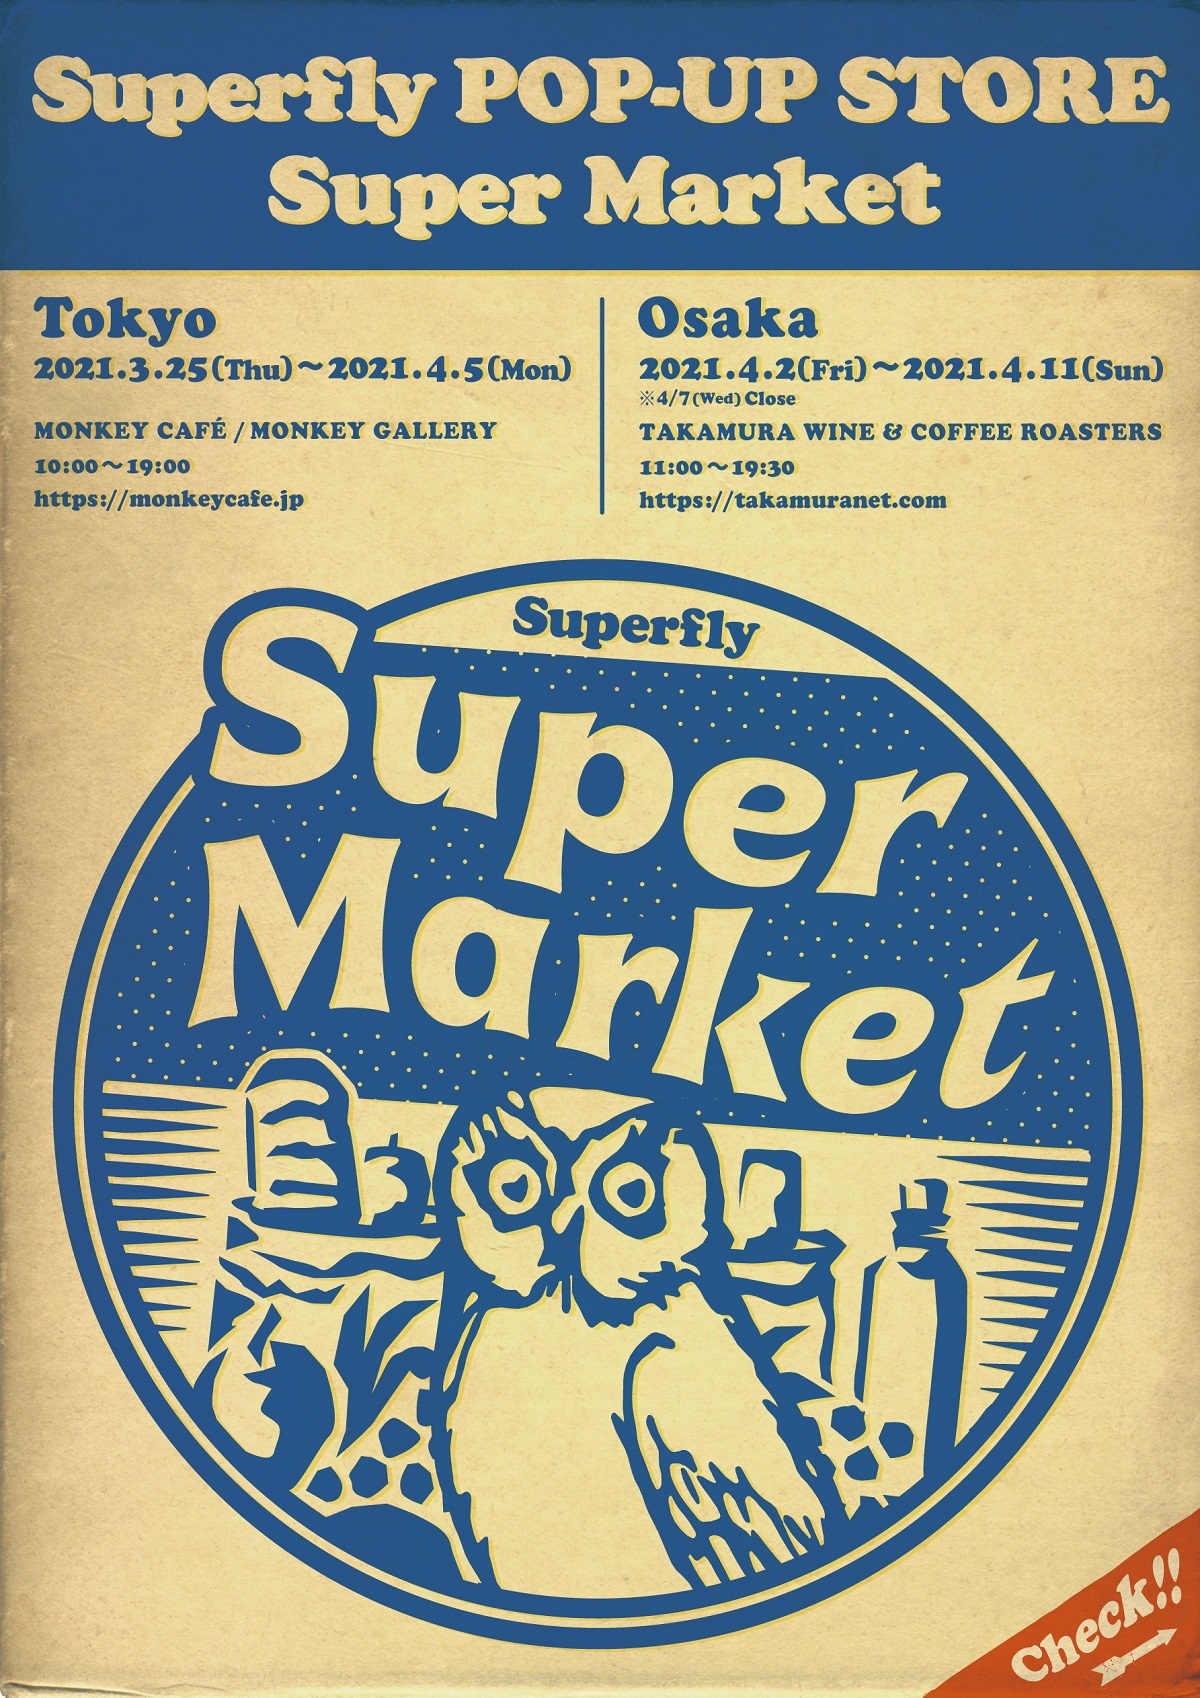 画像 Superfly 初のポップアップストアを東京 大阪で開催決定 の画像2 4 Spice エンタメ特化型情報メディア スパイス